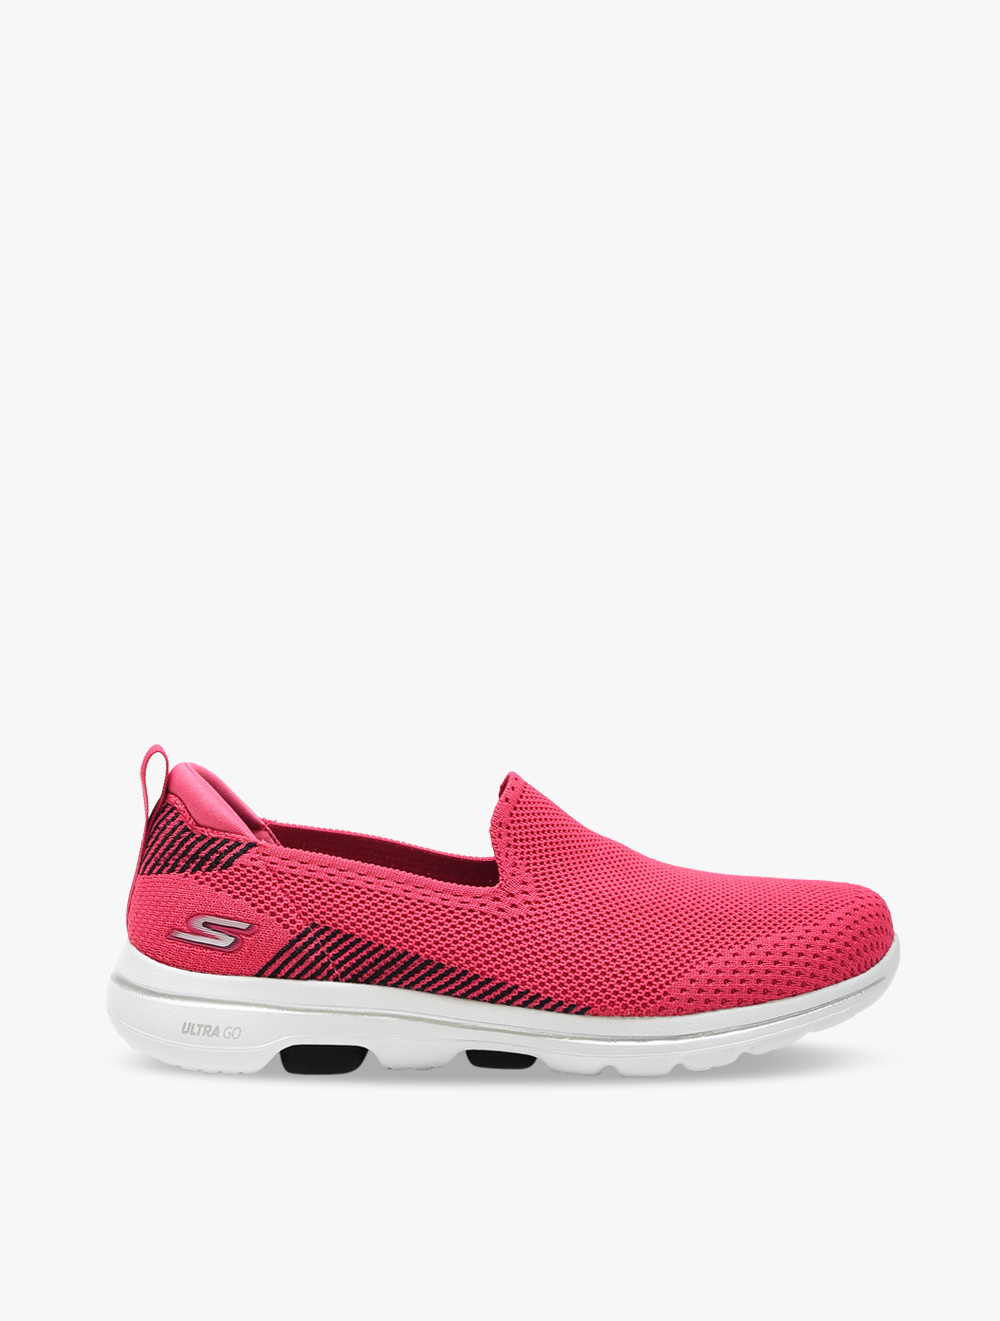 Skechers GOwalk 5 - Prized Womens Walking Shoes - Pink